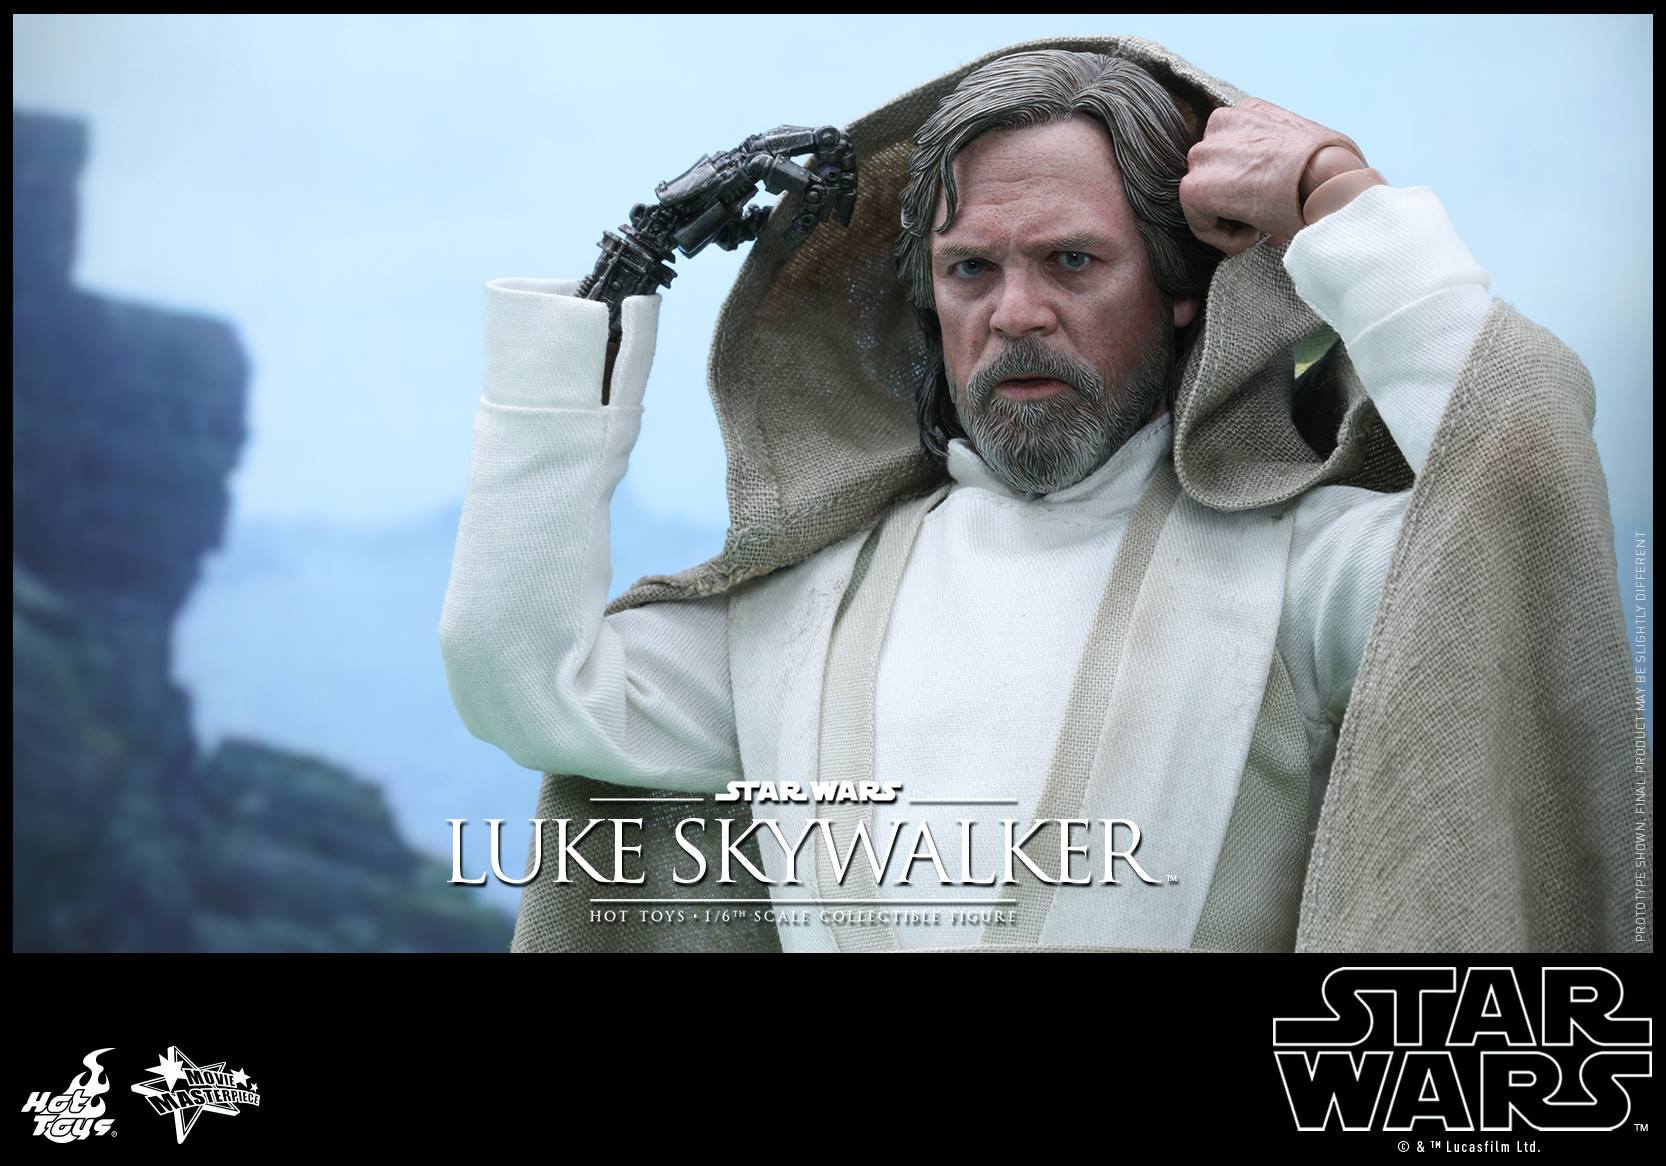 swfahtluke2 Luke Skywalker Star Wars: The Force Awakens Hot Toys Action Figure Revealed